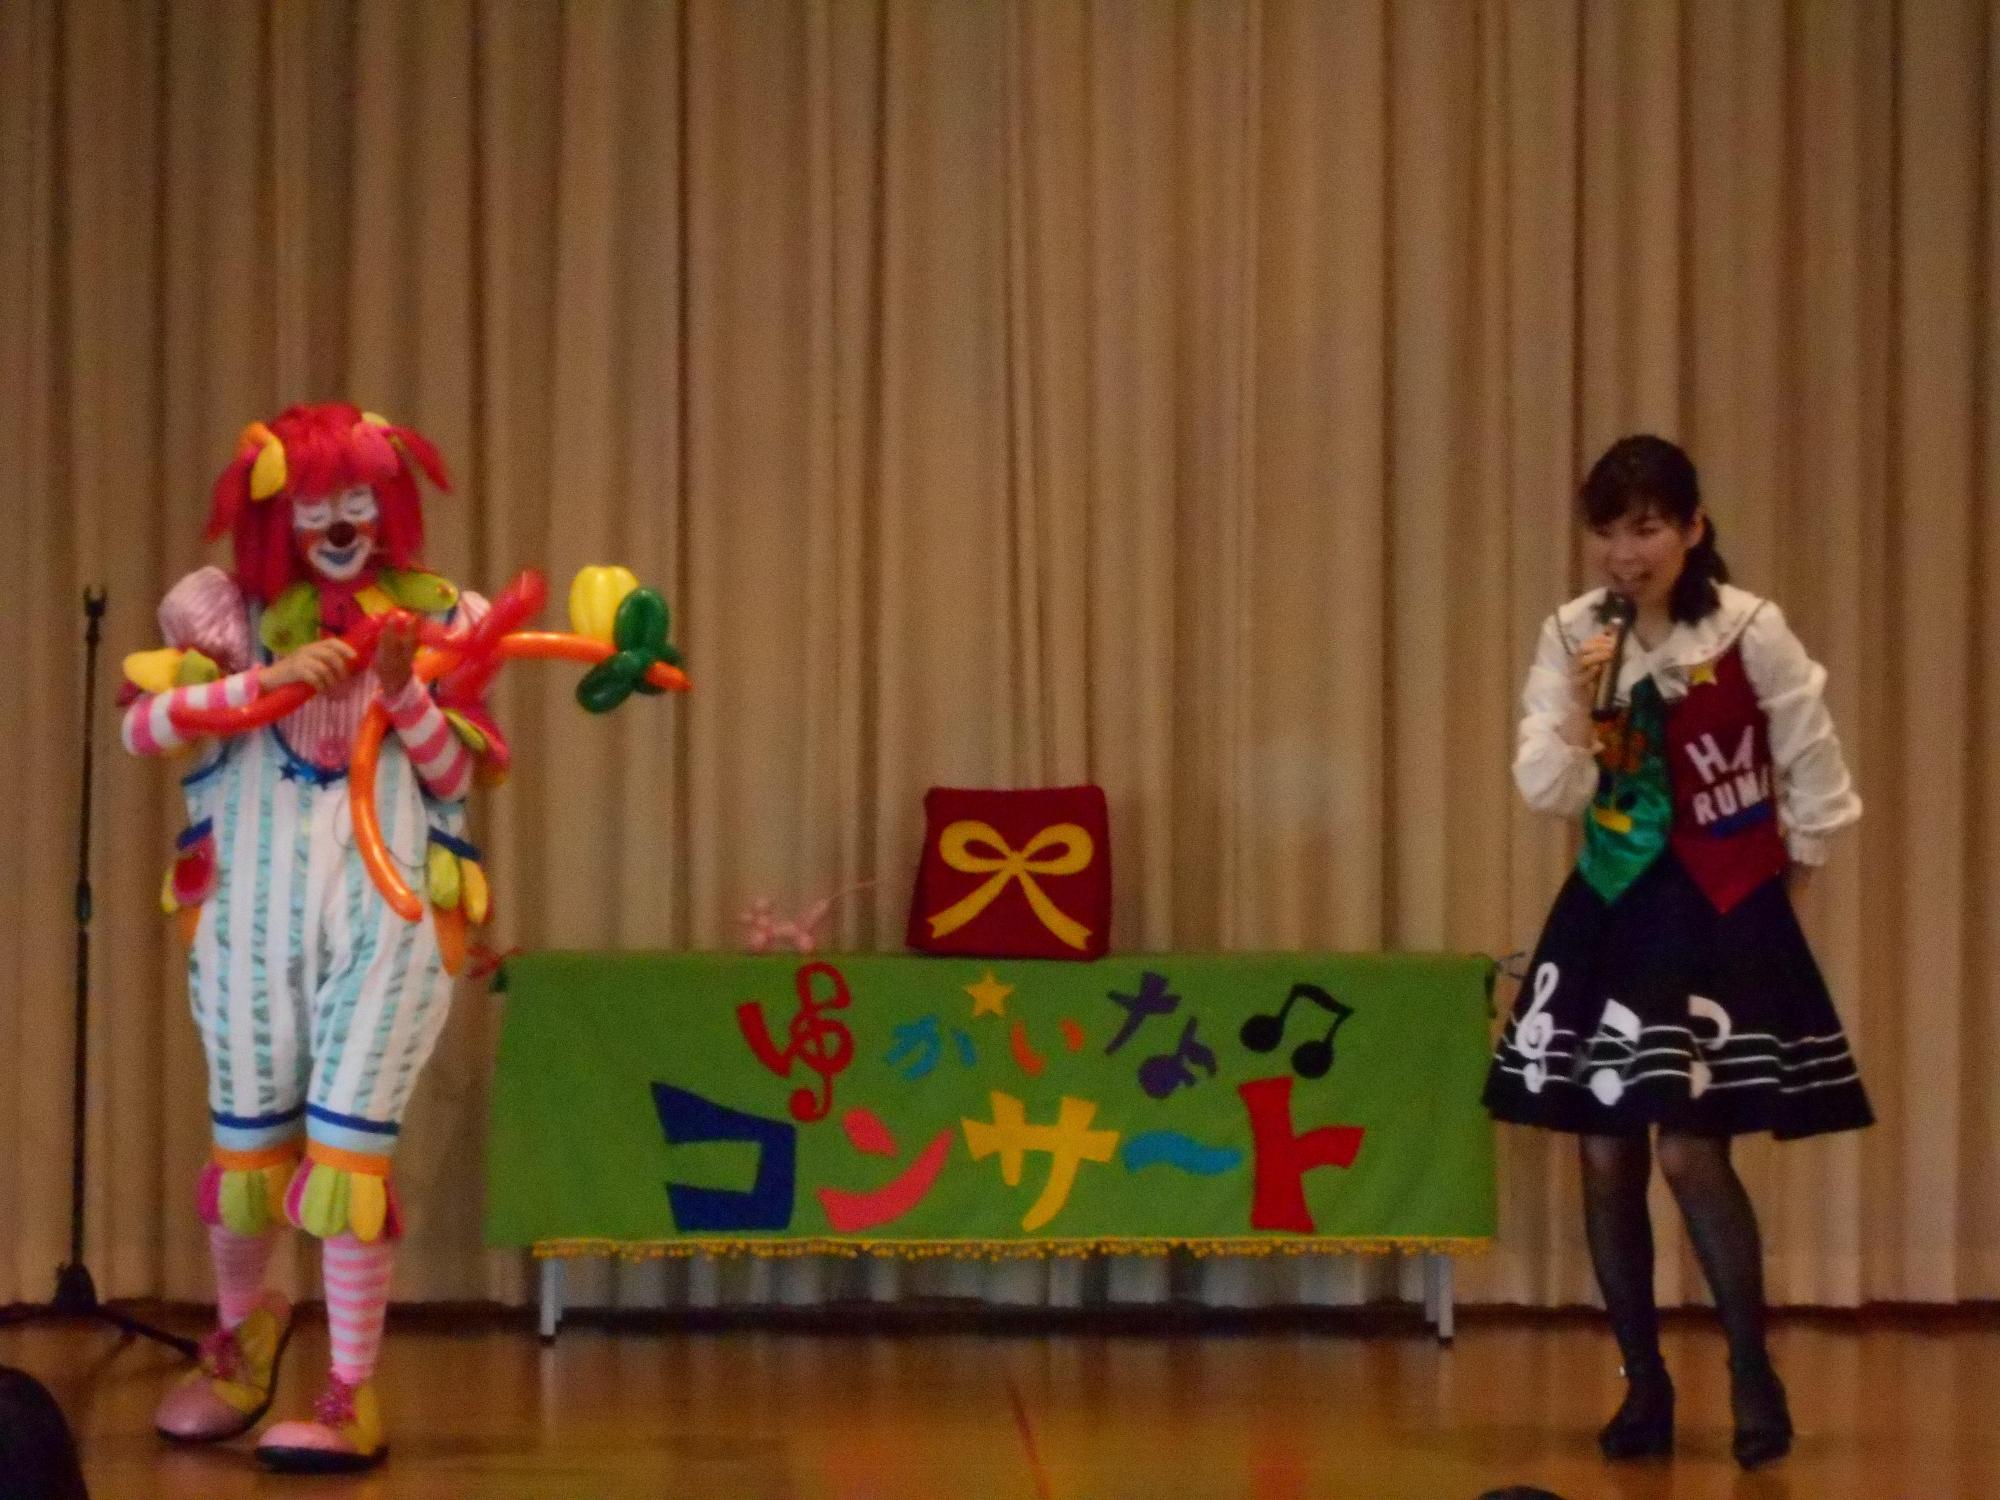 ステージ右側にマイクを持った歌のお姉さんが立ち、左側にバルーンアートで何かを作っているピエロの写真